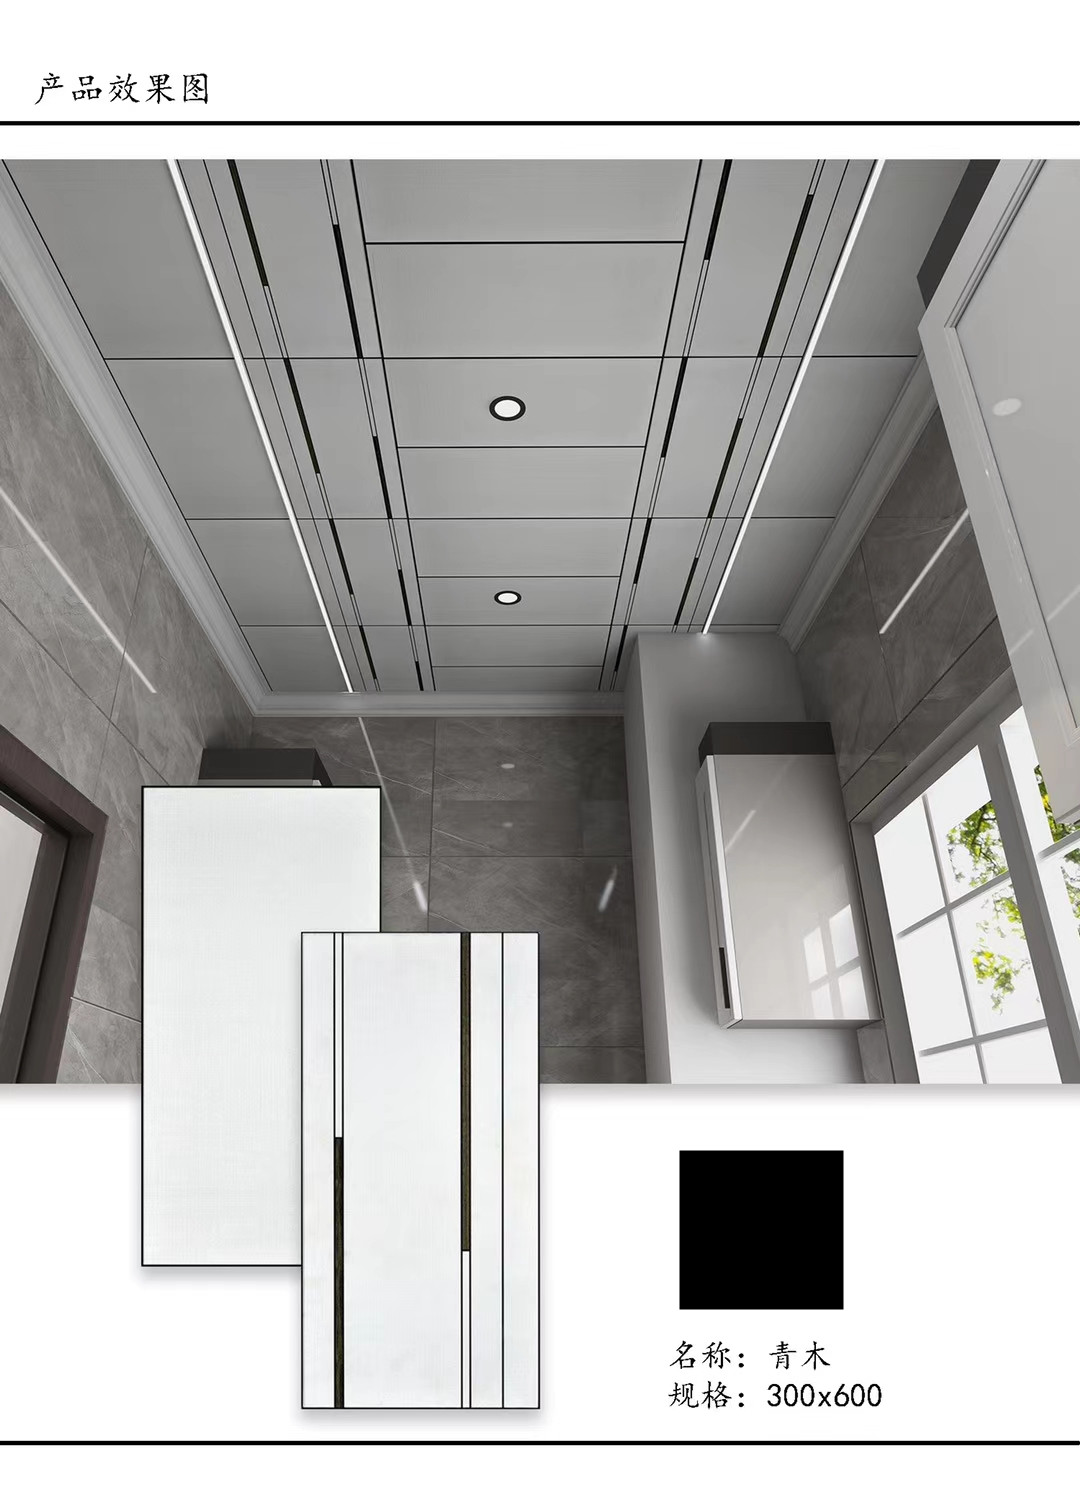 集成吊顶铝扣板厨房卫生间客厅造型300x600吊顶天花板蜂窝板材料 - 图1